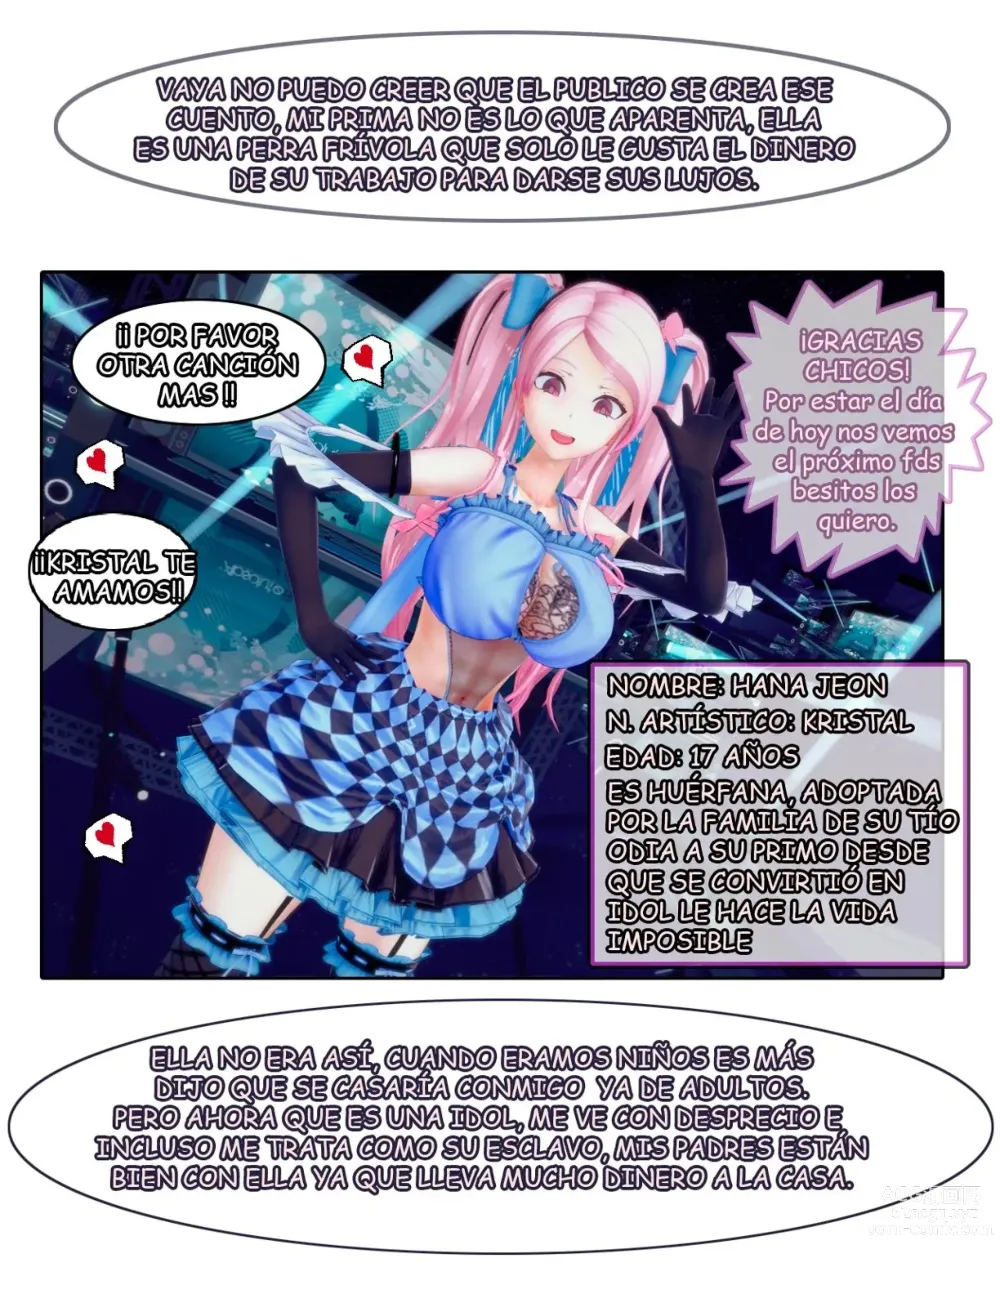 Page 2 of doujinshi Chantaje Sexual a mi prima la Idol #1 y 2